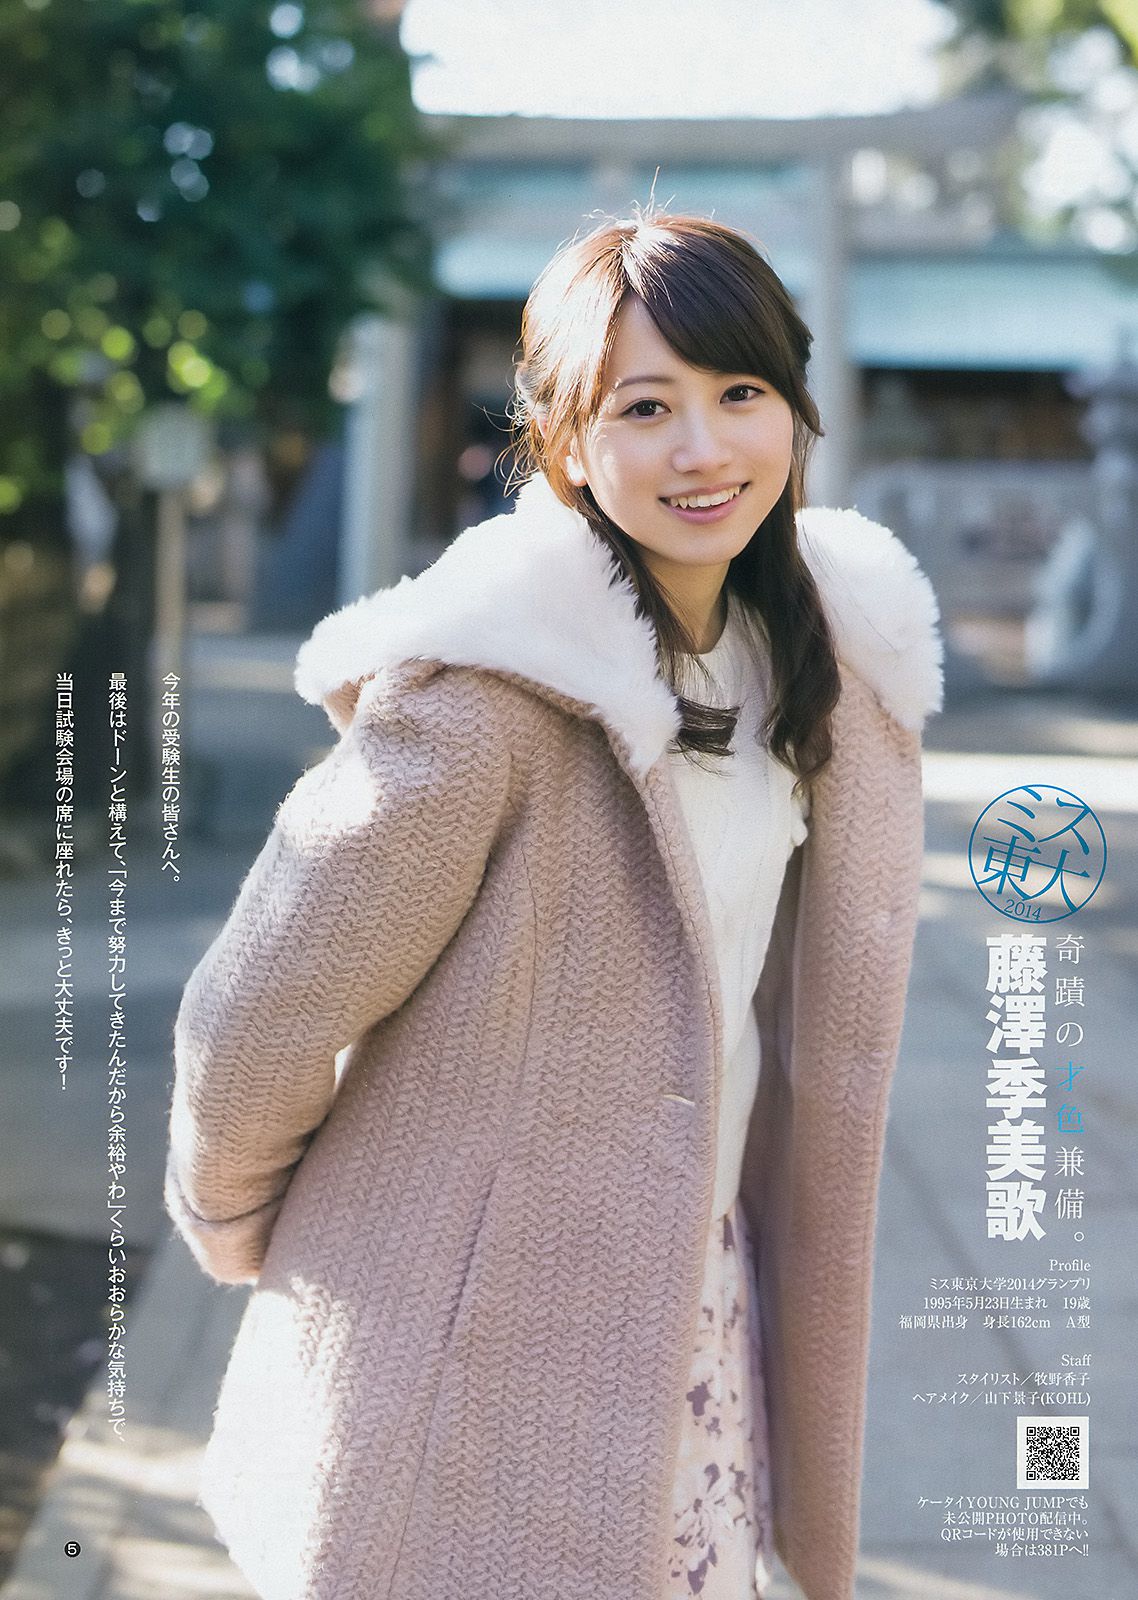 Nhất Uemo ga Fujisawa Season Mige [Weekly Young Jump Weekly Young Jump] Tạp chí ảnh số 10 năm 2015 Trang 6 No.9d1dd2